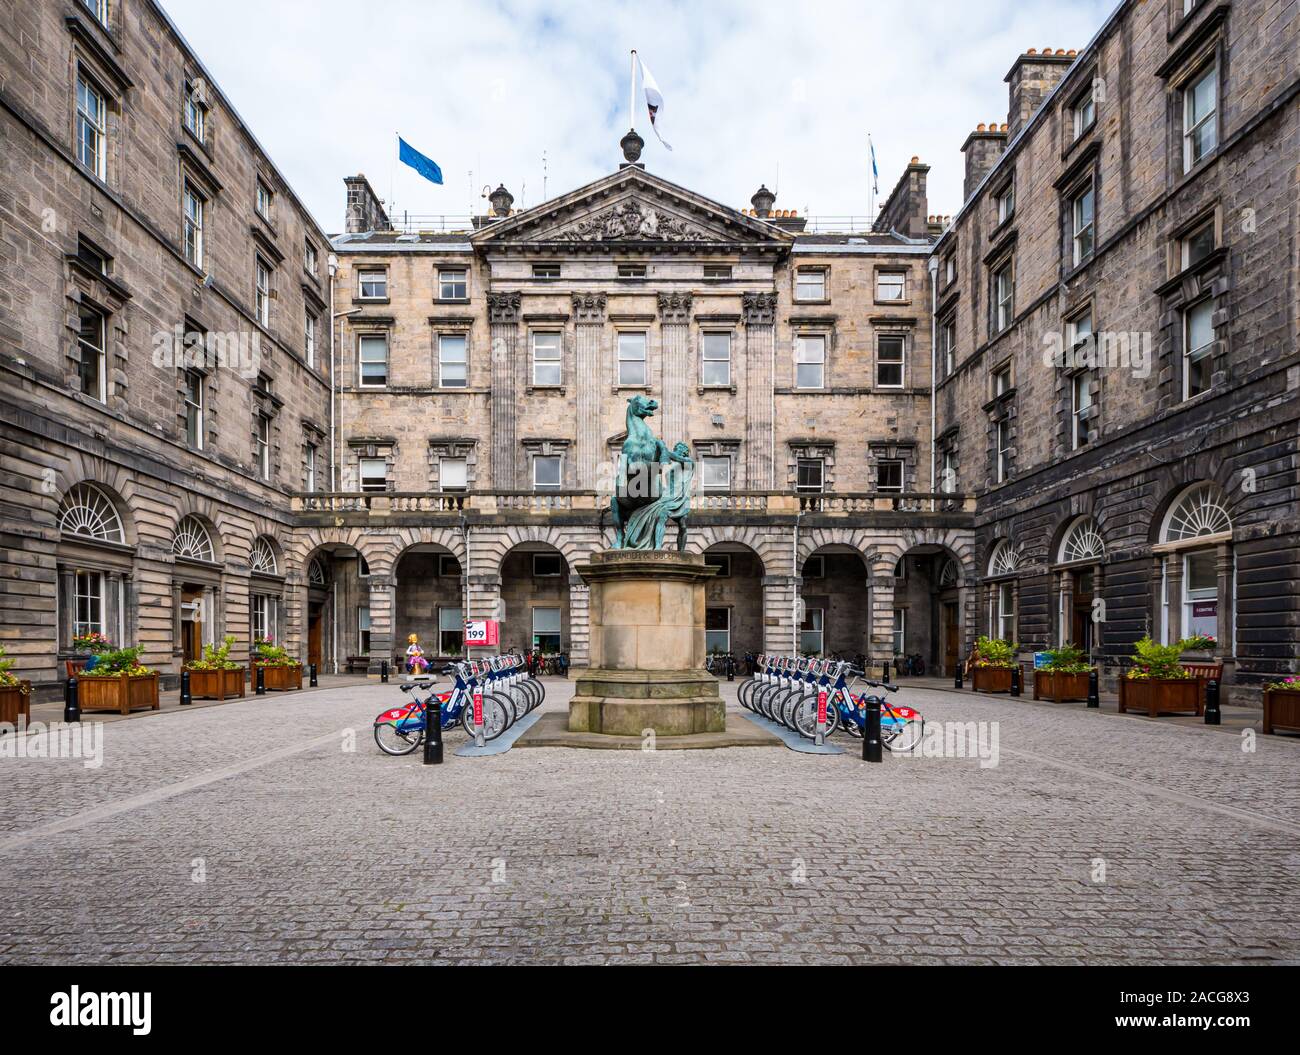 Stadt Kammern Innenhof mit nur Essen, Vermietung bike Park & Oor Wullie Cartoon Figur, Royal Mile, Edinburgh, Schottland, Großbritannien Stockfoto